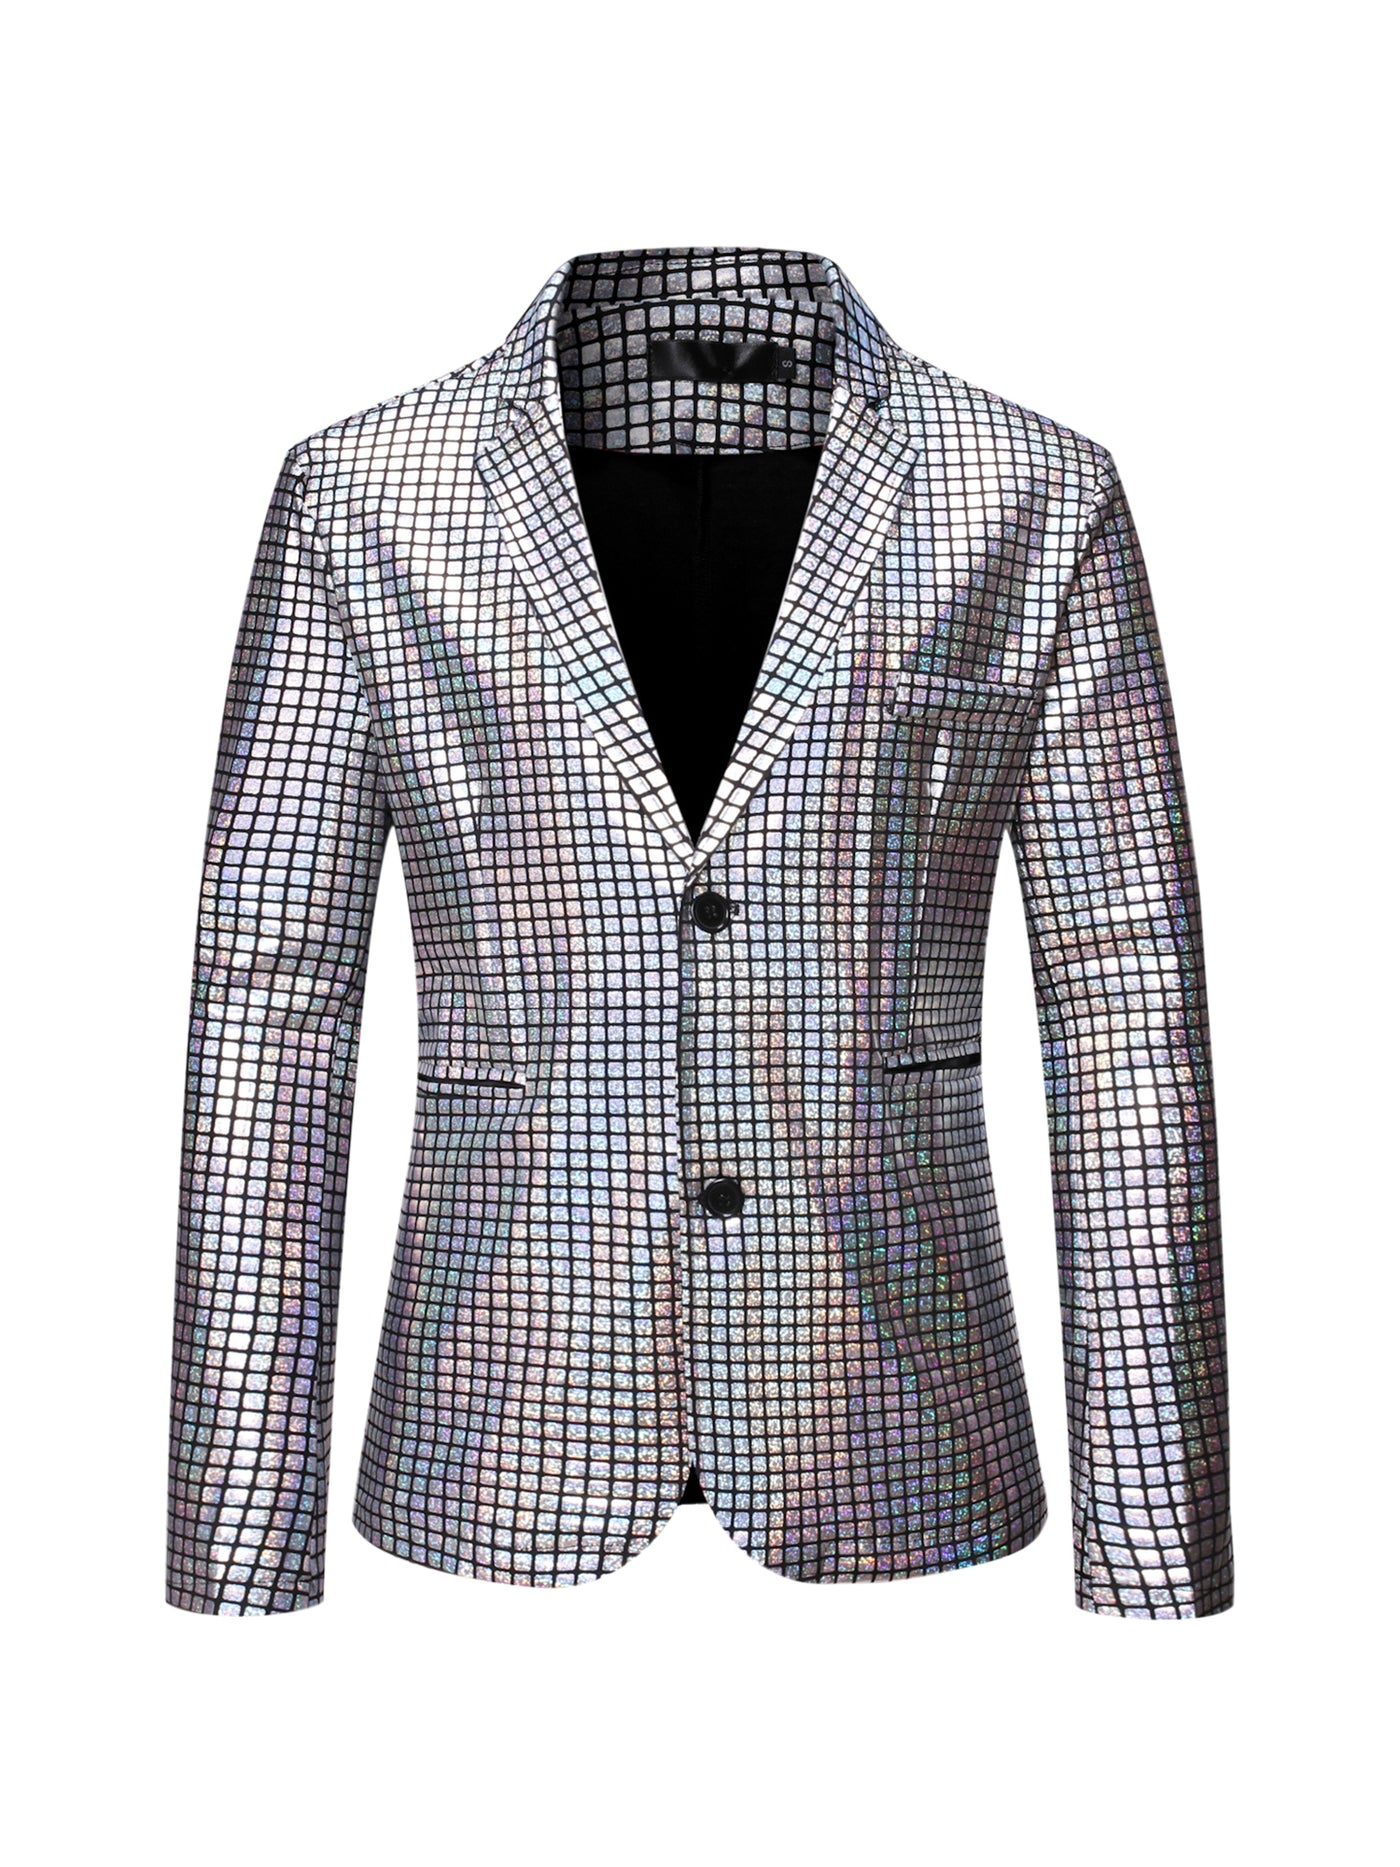 Bublédon Men's Sequin Blazer Slim Fit Two Button Disco Party Metallic Sport Coat